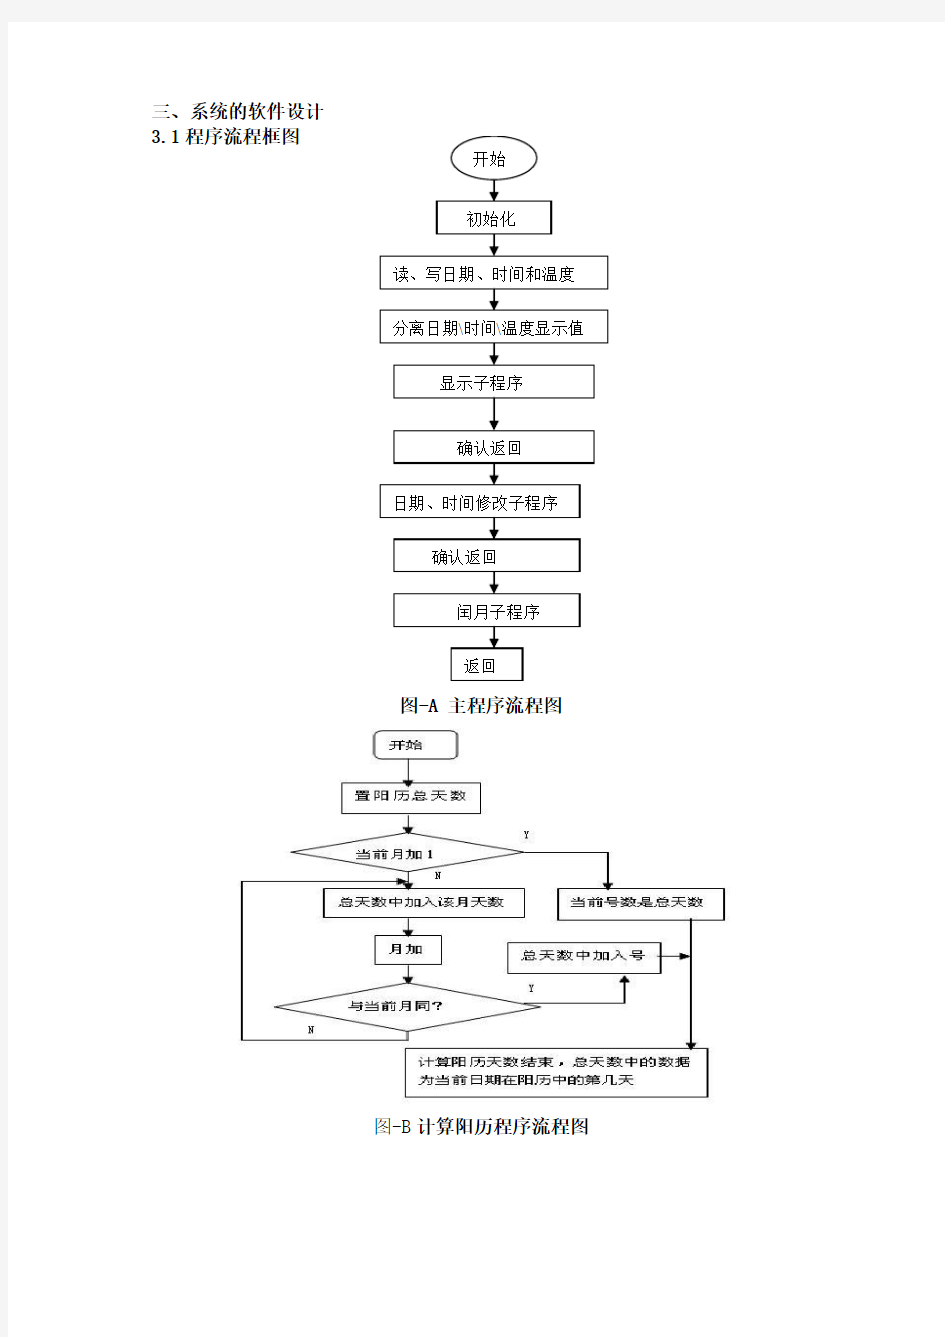 程序流程框图